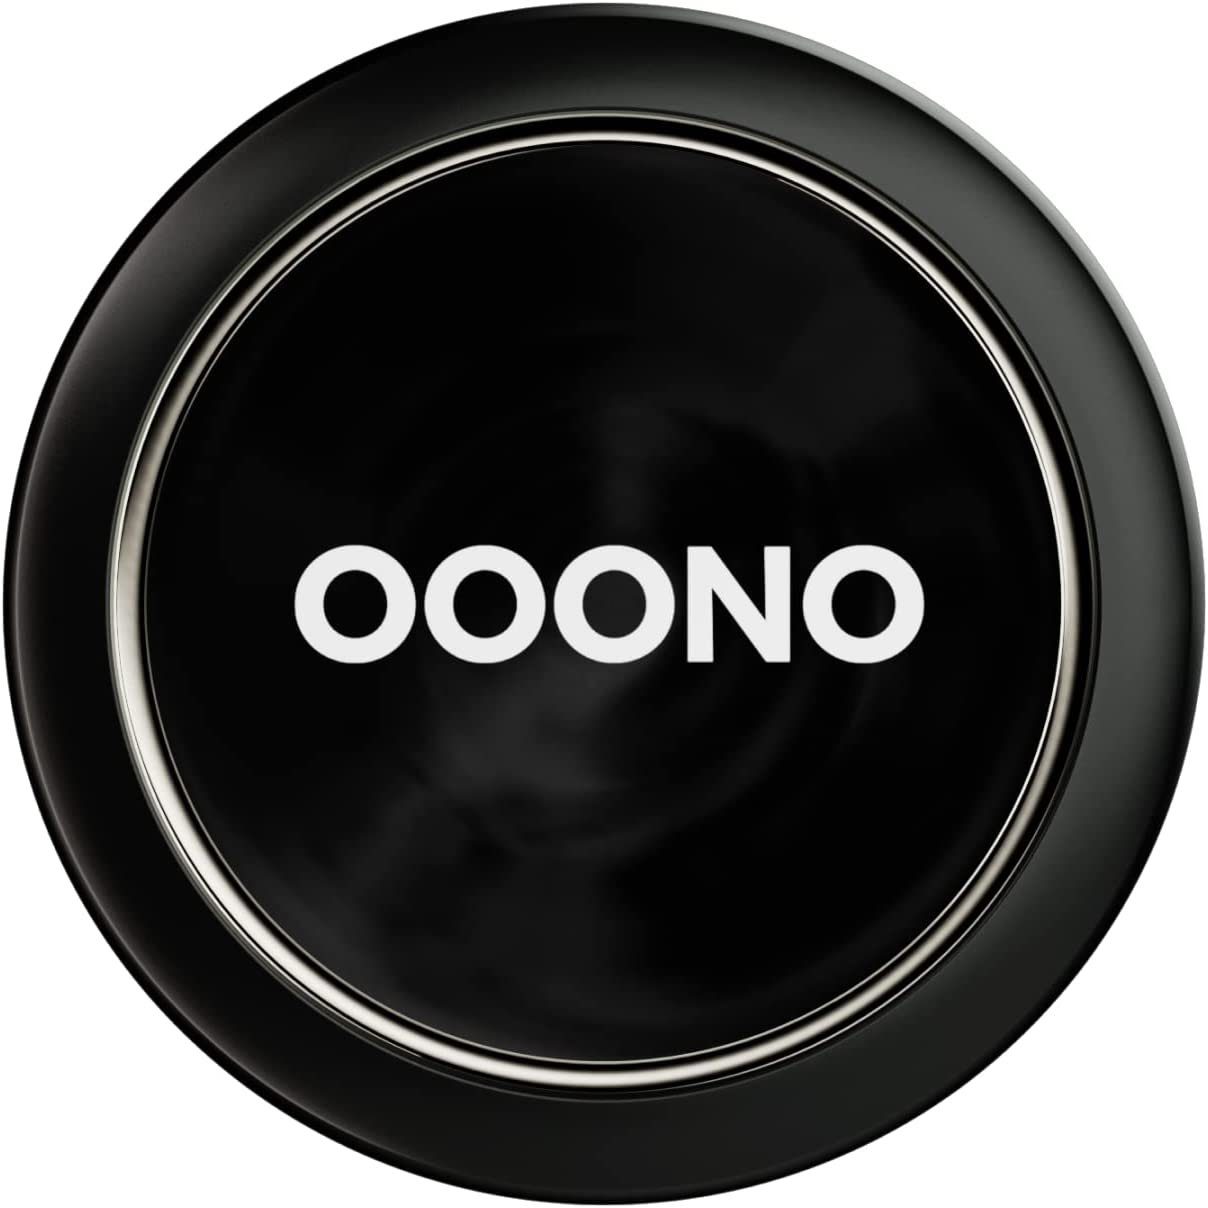 Supergünstiger Ausverkauf OOONO CO-DRIVER NO1: Warnt vor in Blitzen OOONO Verkehrsalarm Echtzeit! Blitzer